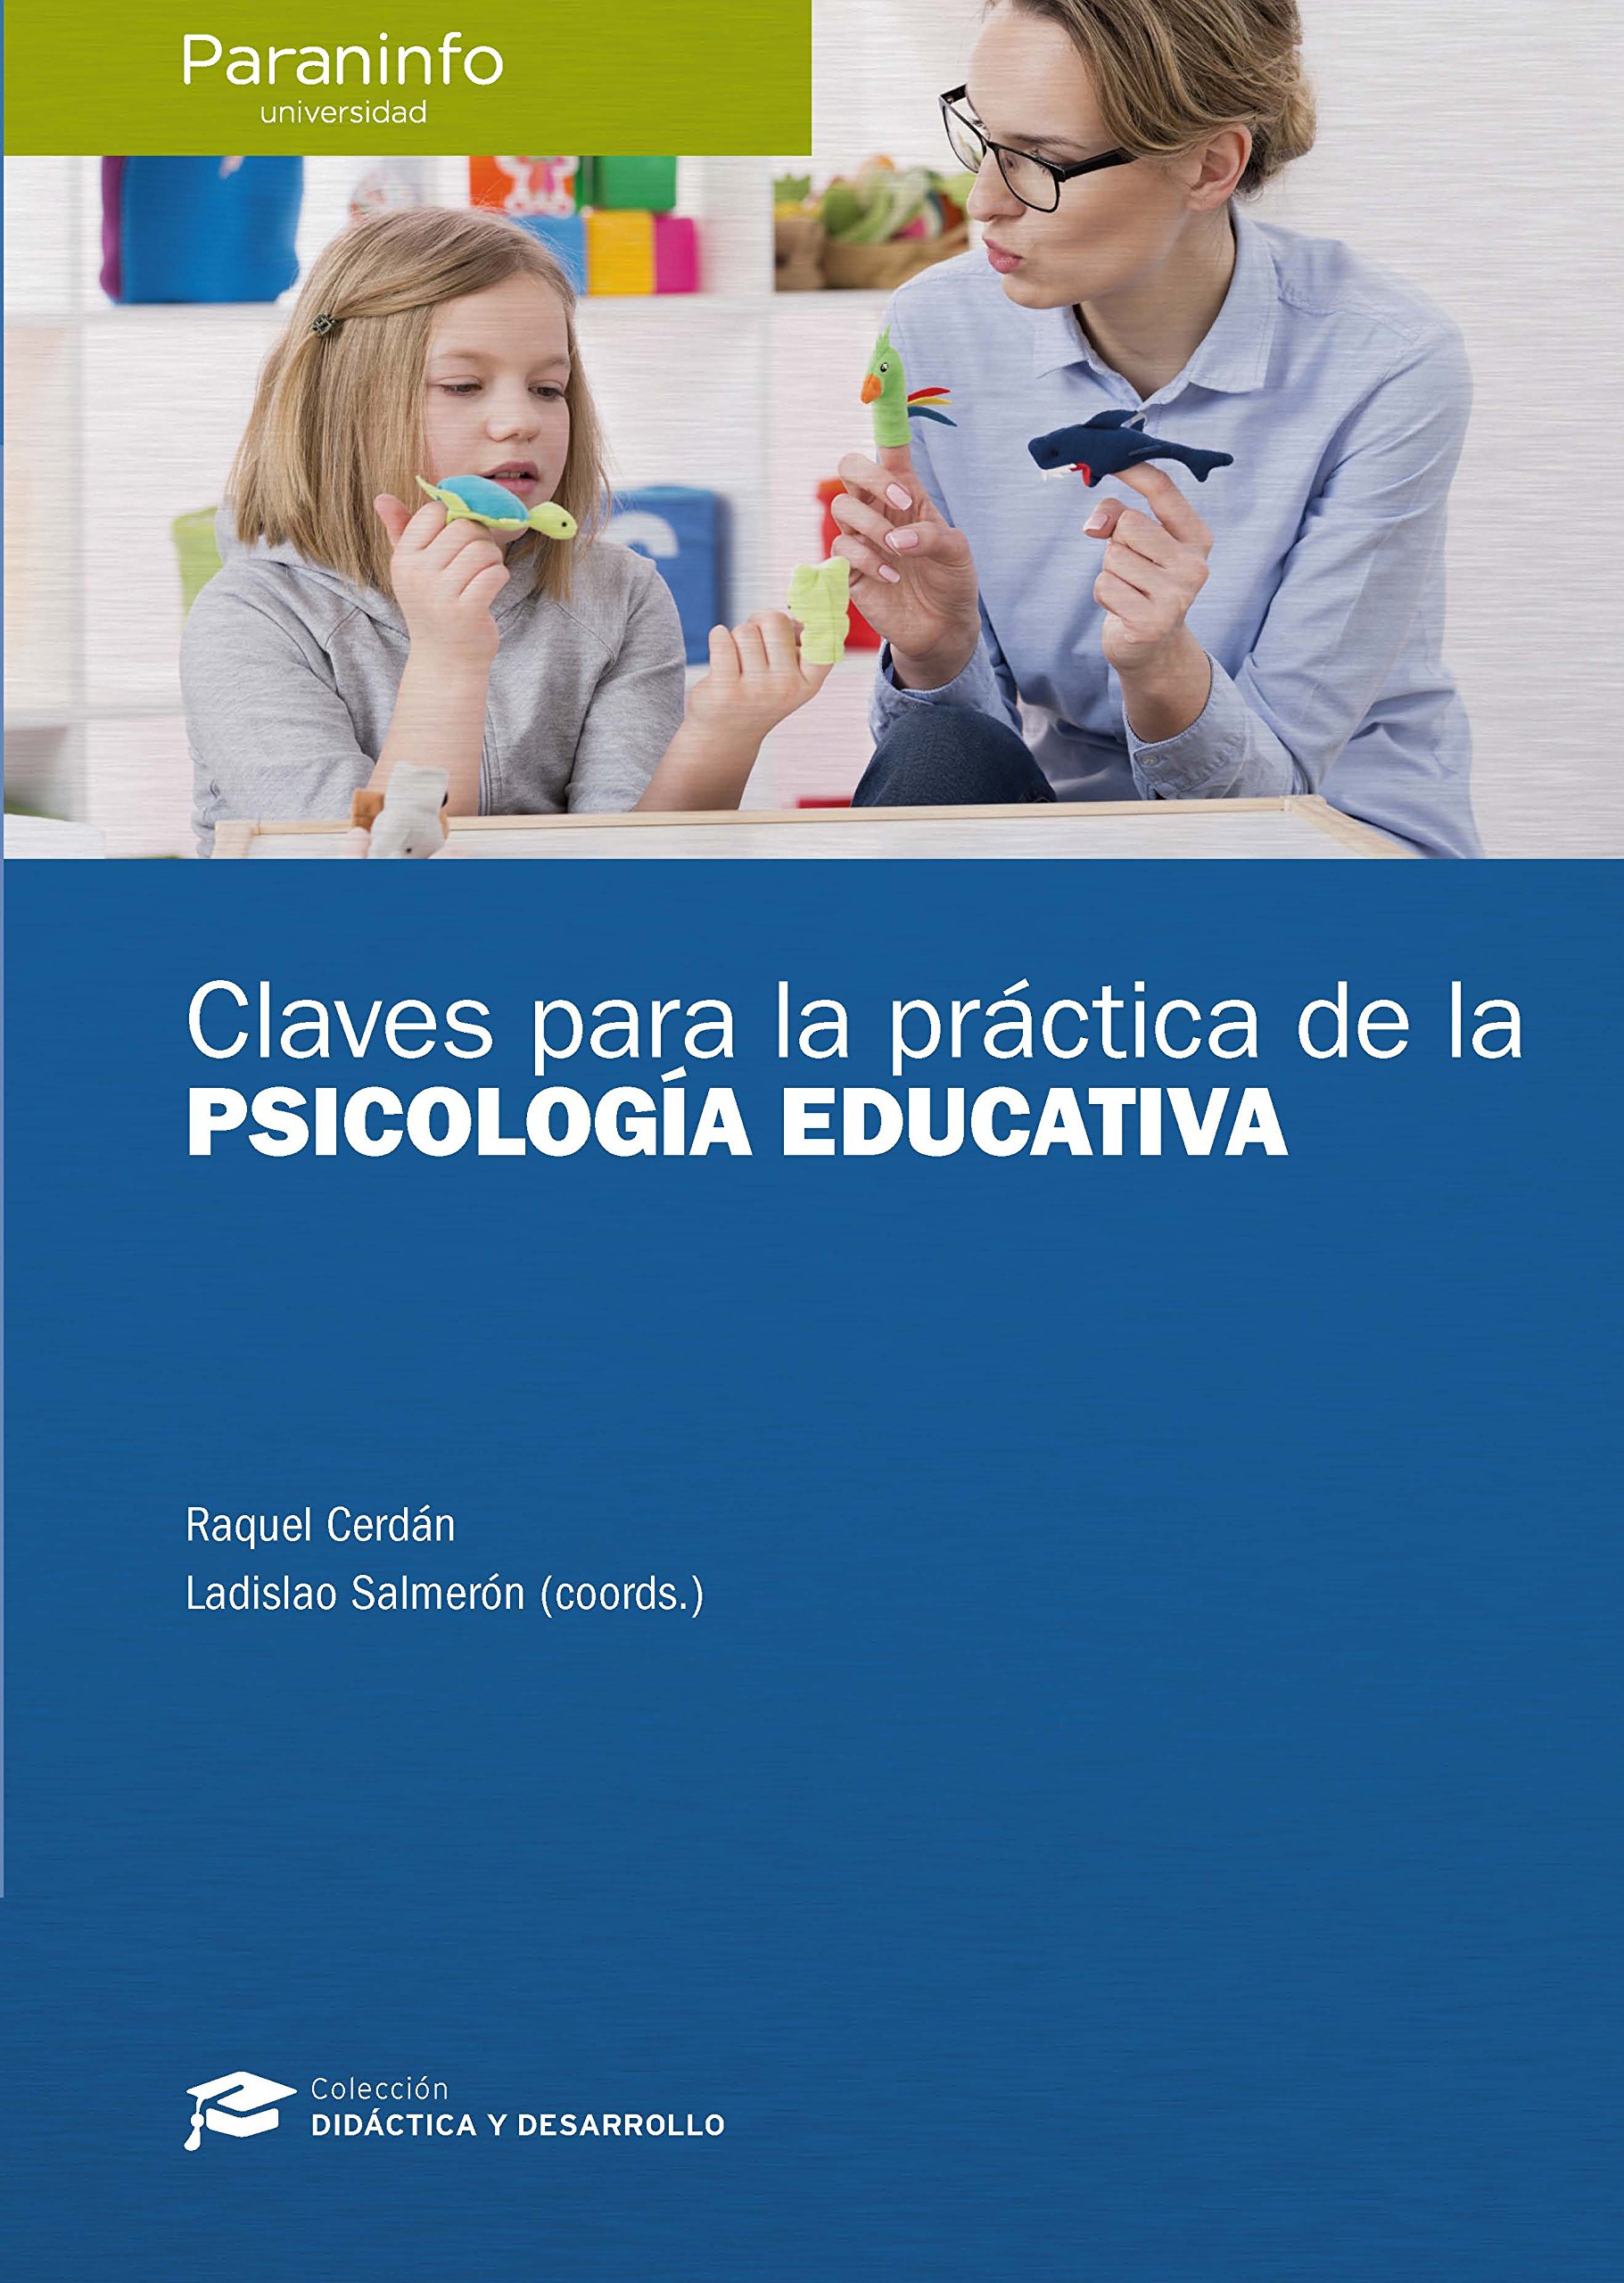 Imagen de portada del libro Claves para la práctica de la psicología educativa